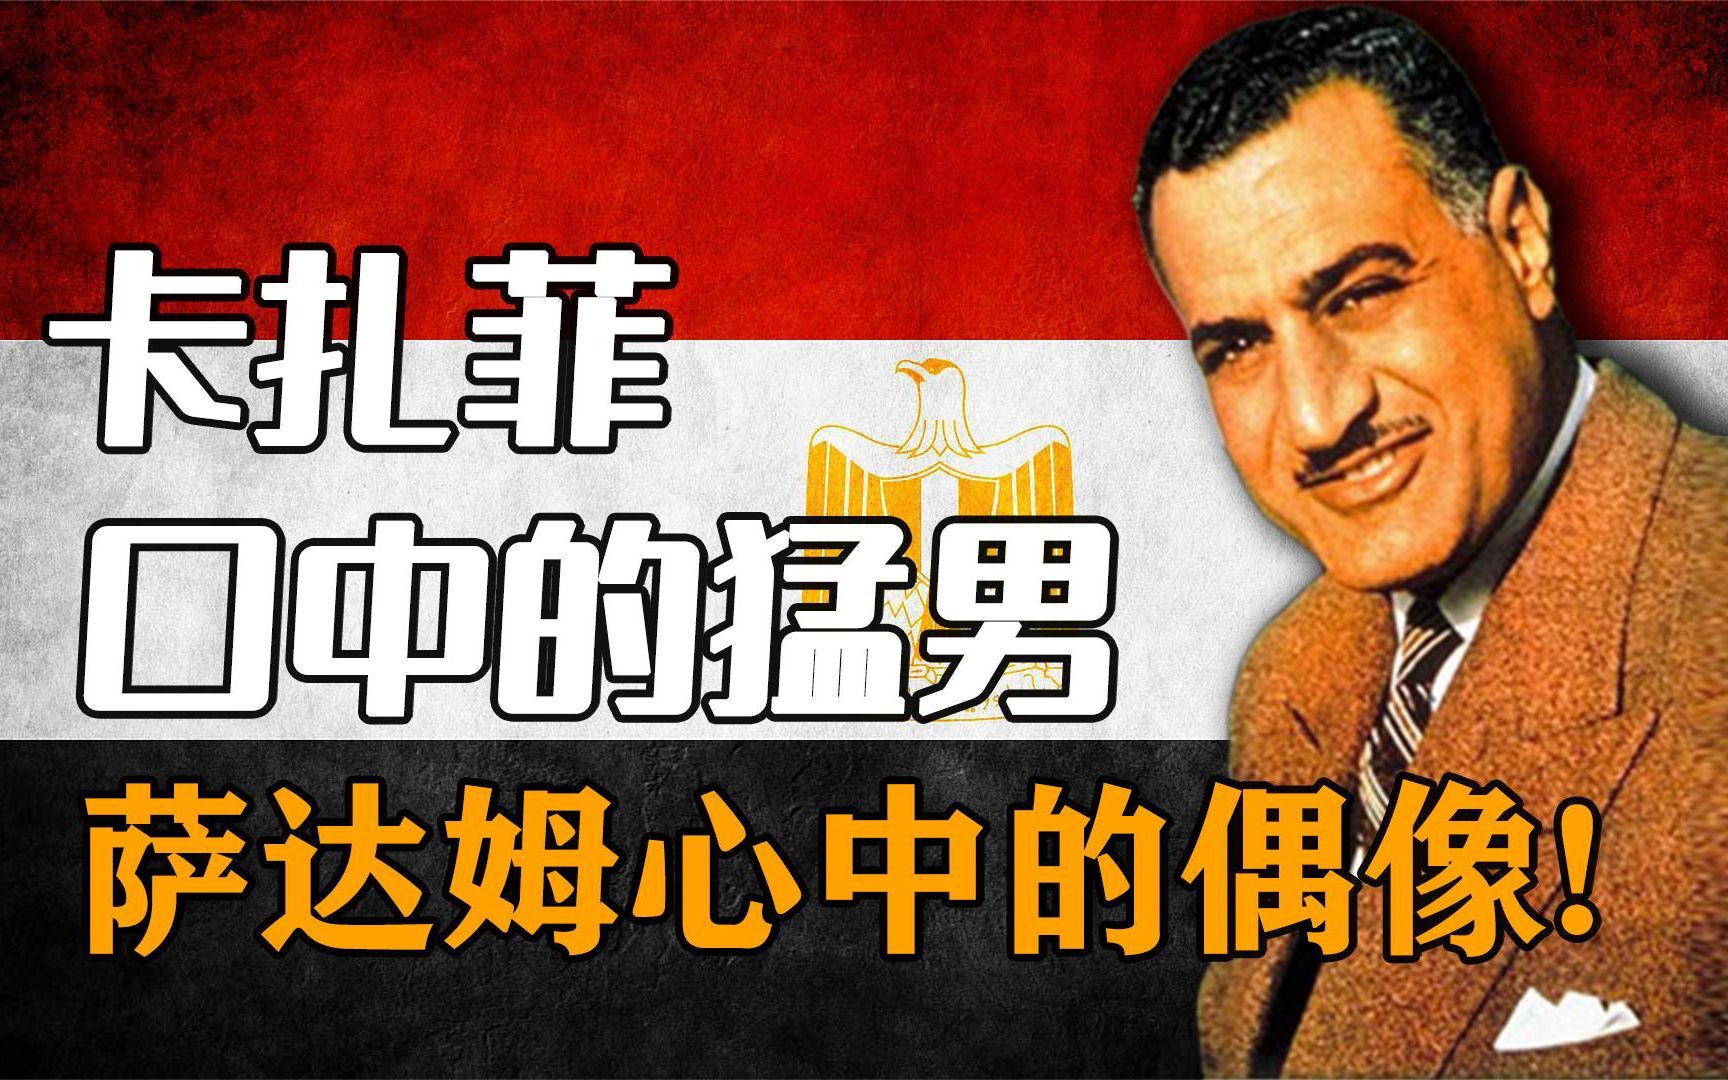 反抗帝国主义的代表人物,埃及的强大领袖,纳赛尔的传奇人生!